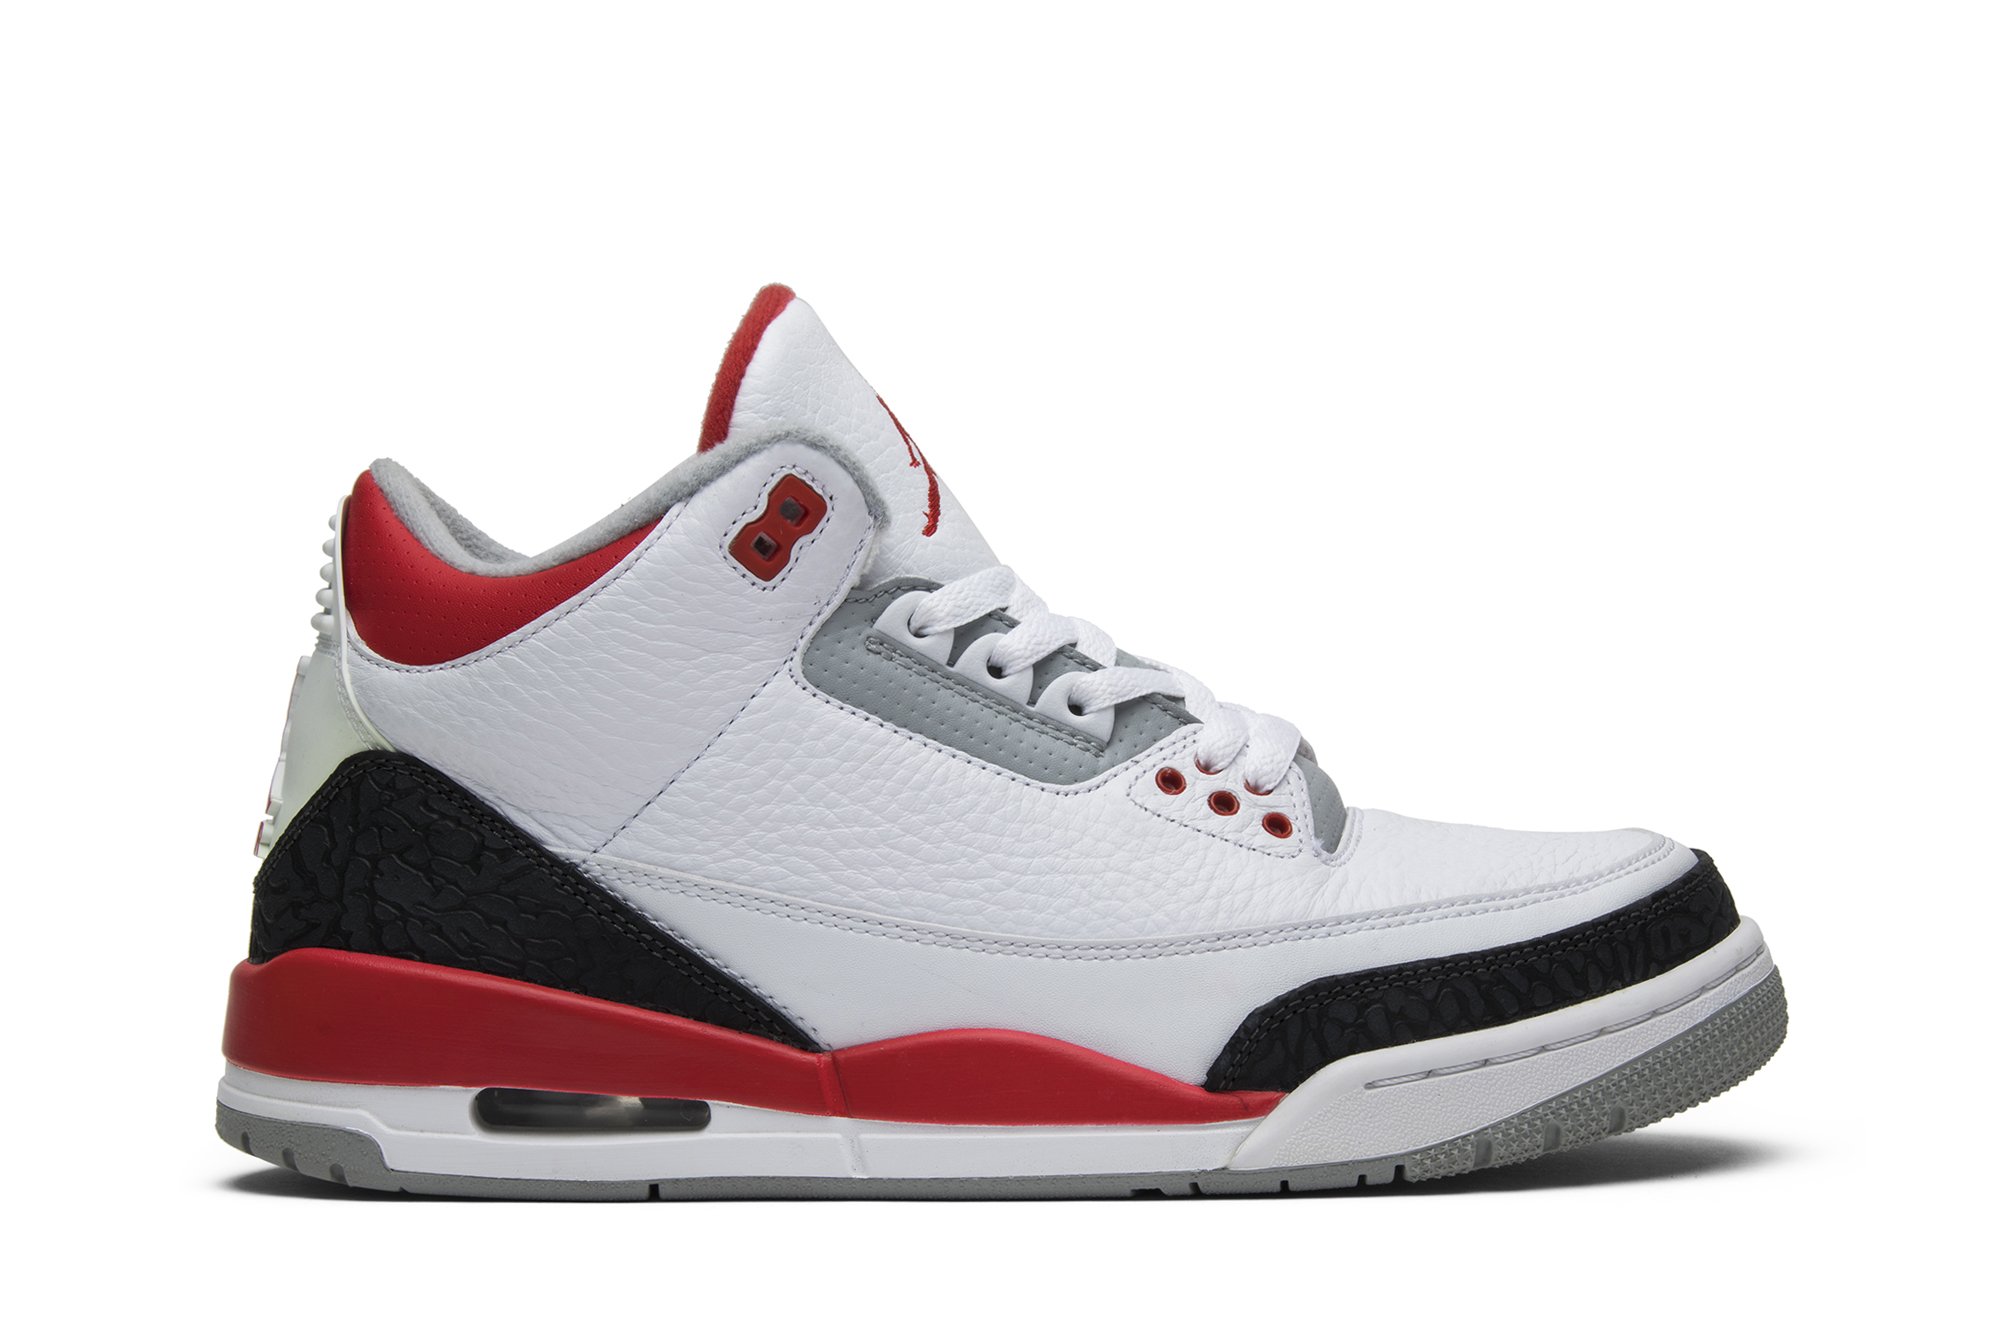 Buy Air Jordan 3 Retro 'Fire Red' 2013 - 136064 120 | GOAT